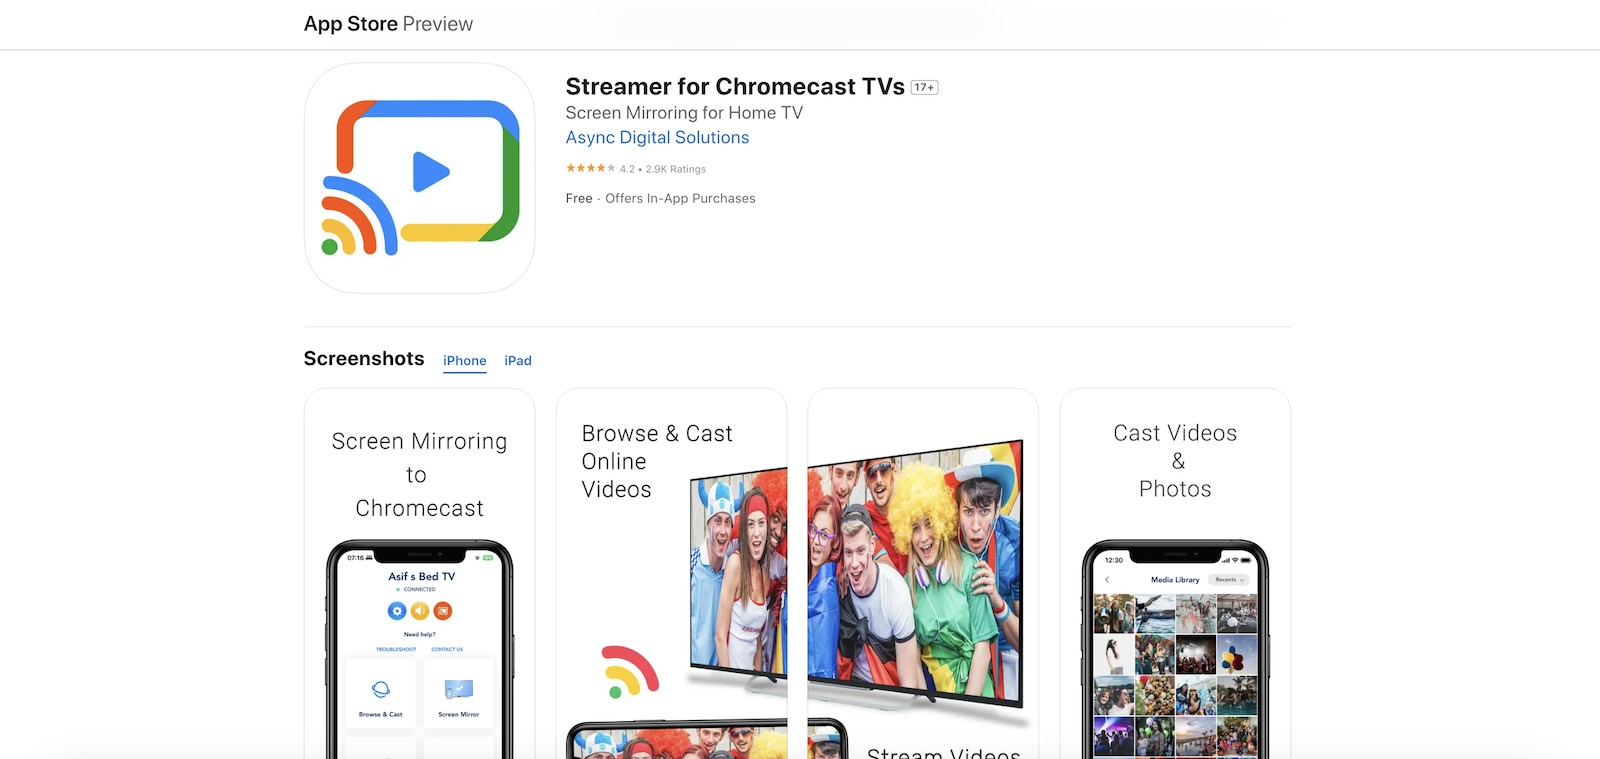 Streamer for Chromecast TVs in the App Store